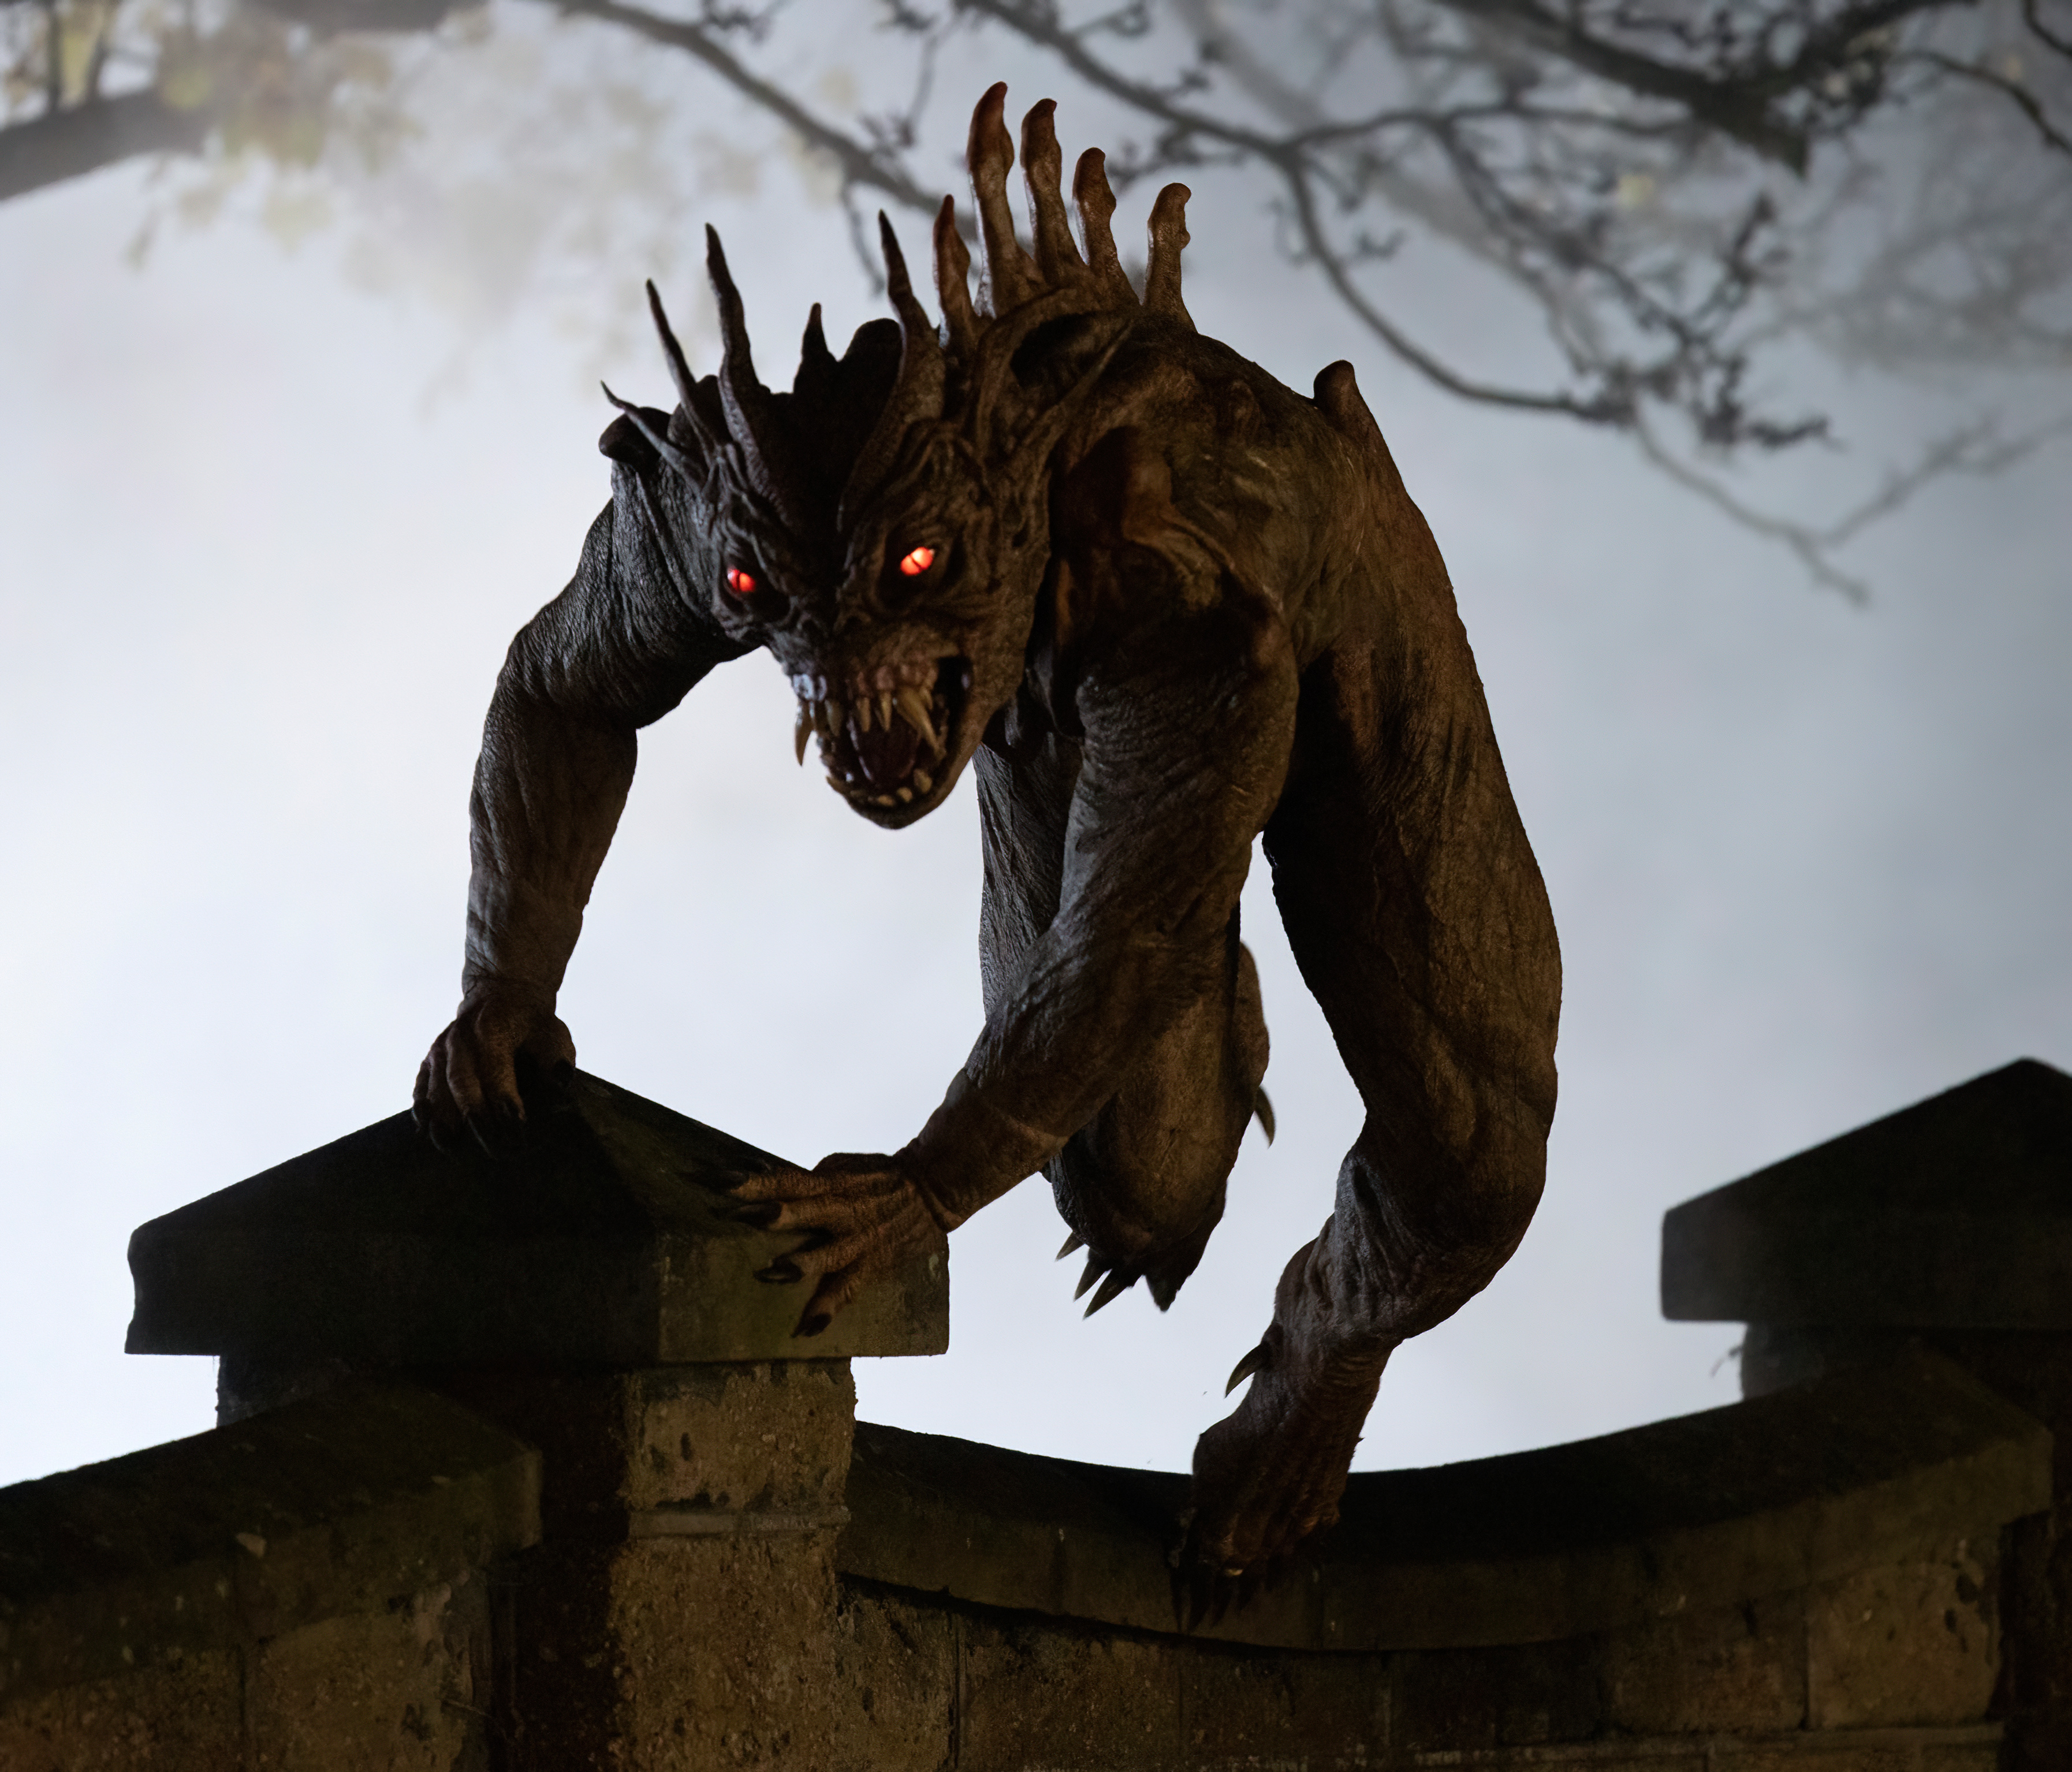 Bei den Dreharbeiten wurde ein furchteinflößendes Monster gesehen, das über eine Mauer kletterte